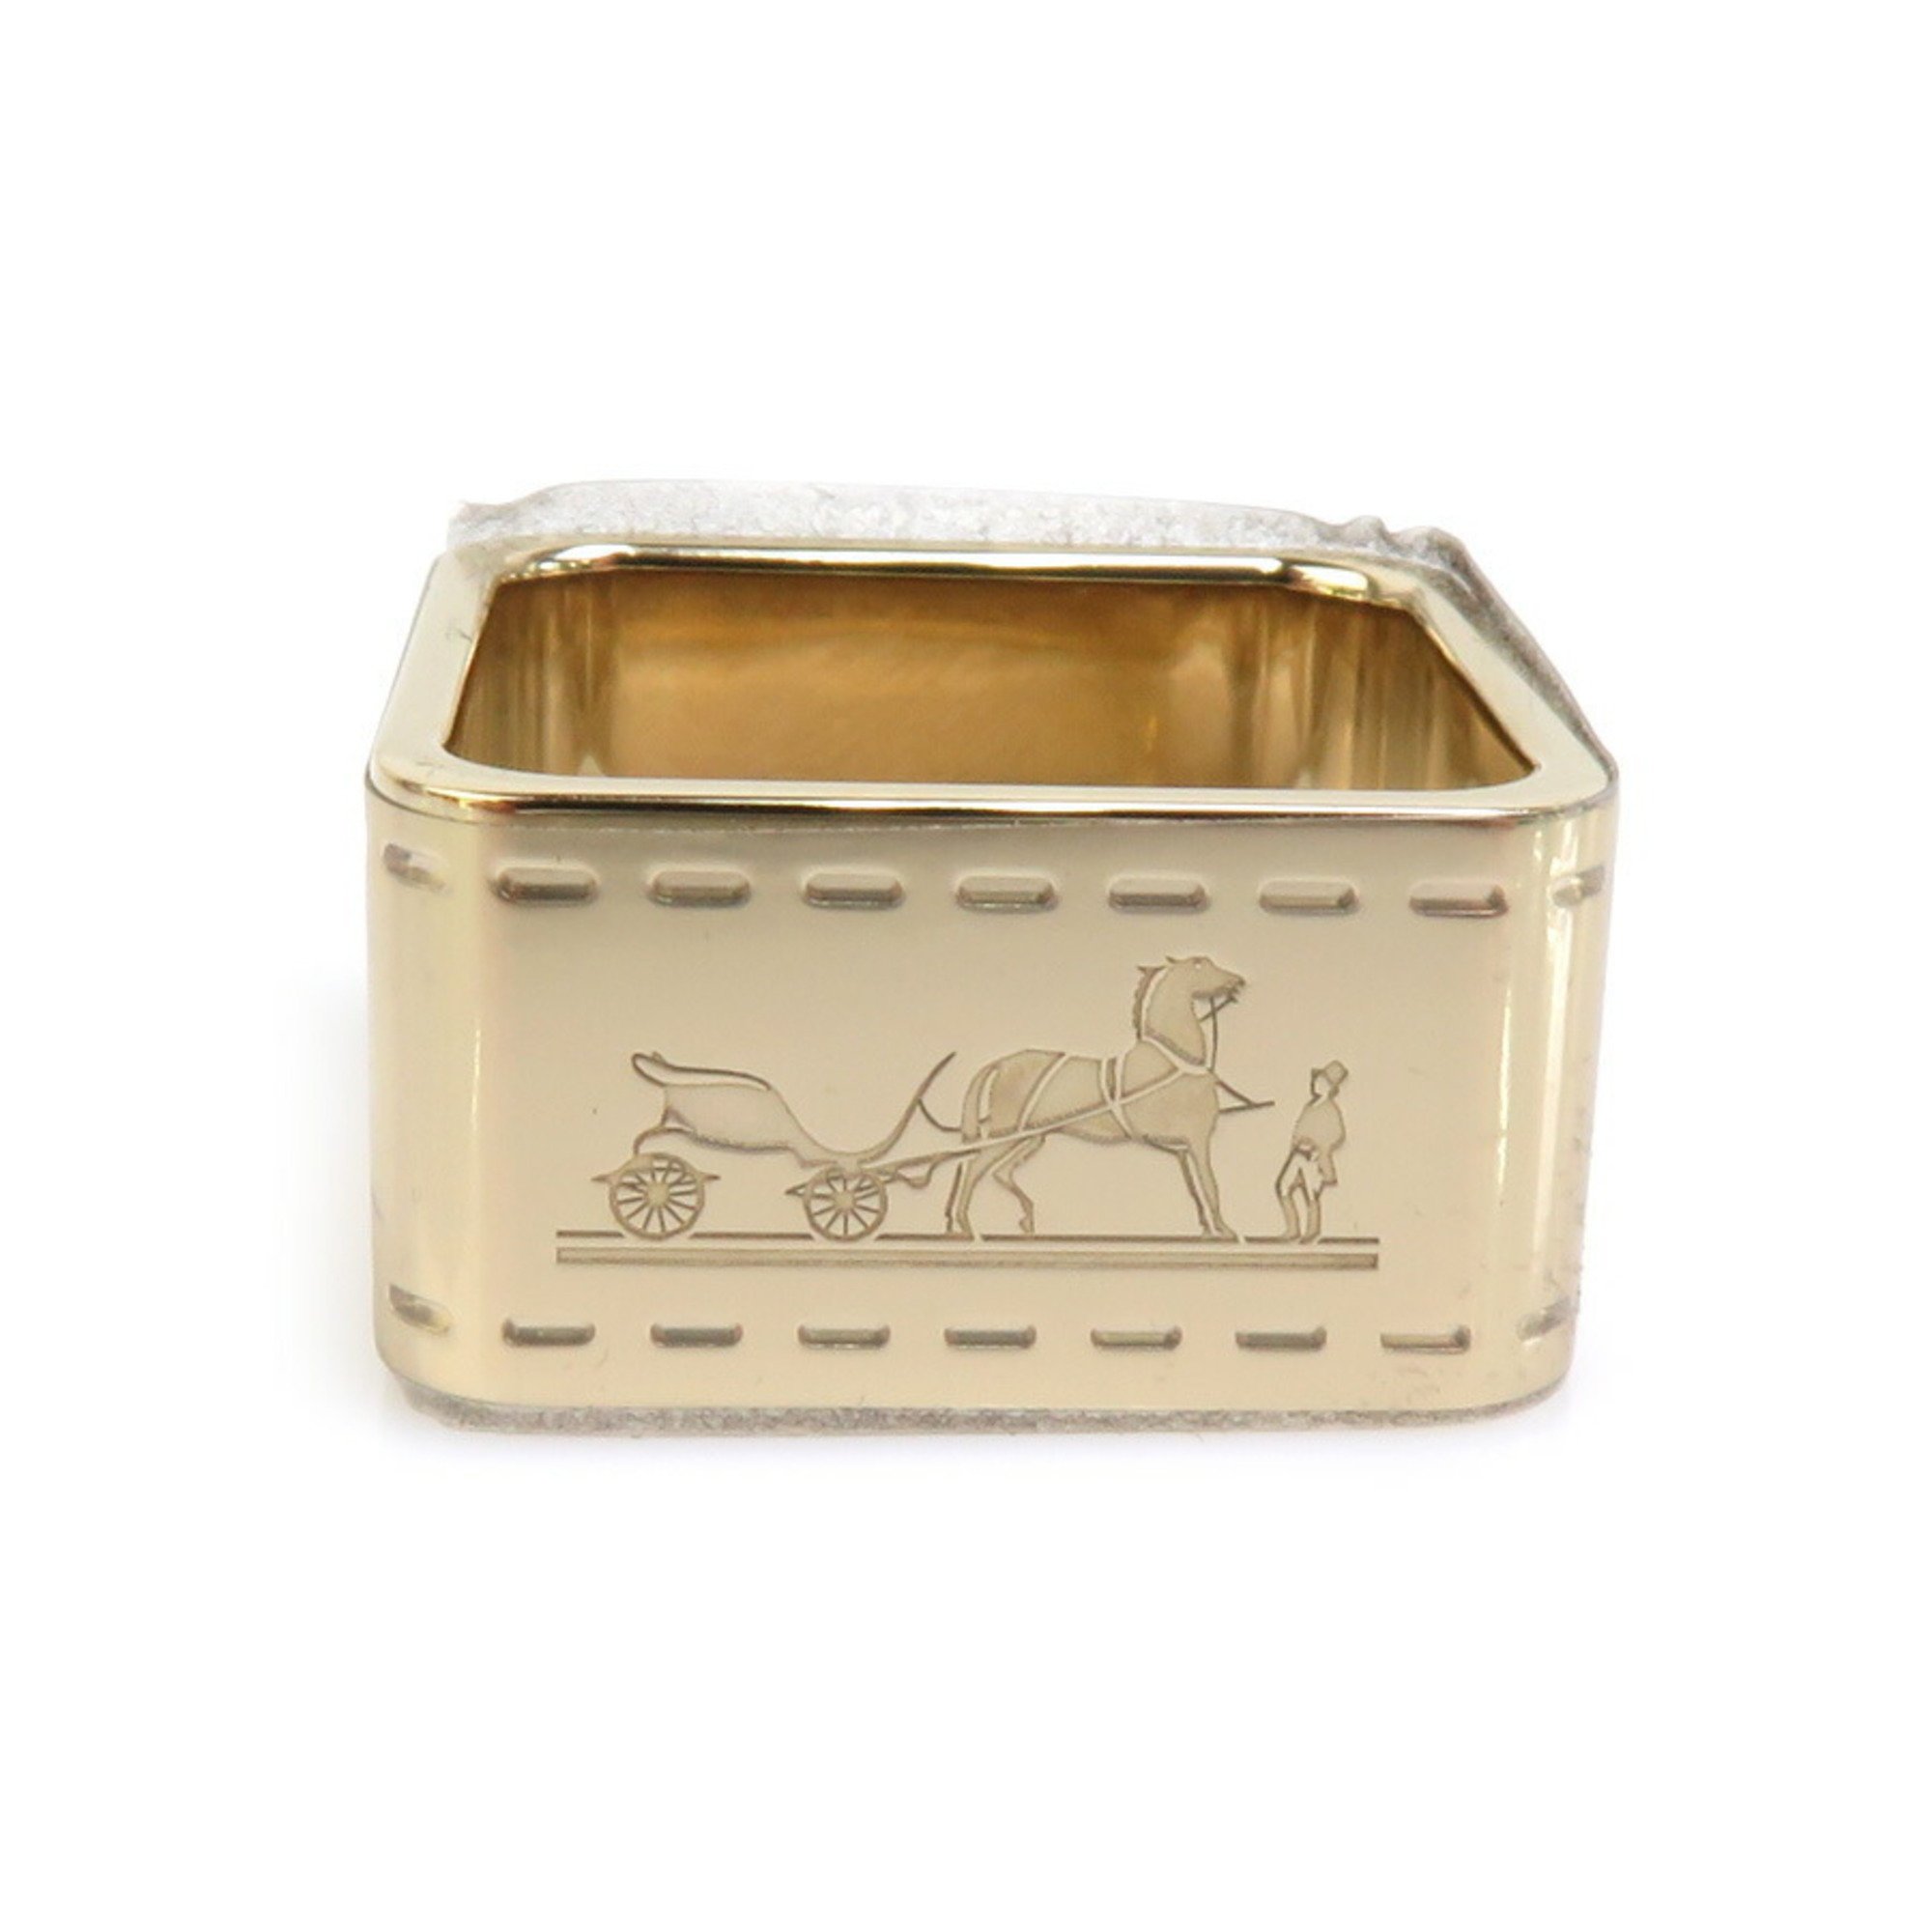 Hermes HERMES Scarf Ring Bordic Metal Gold Men's Women's 55666f